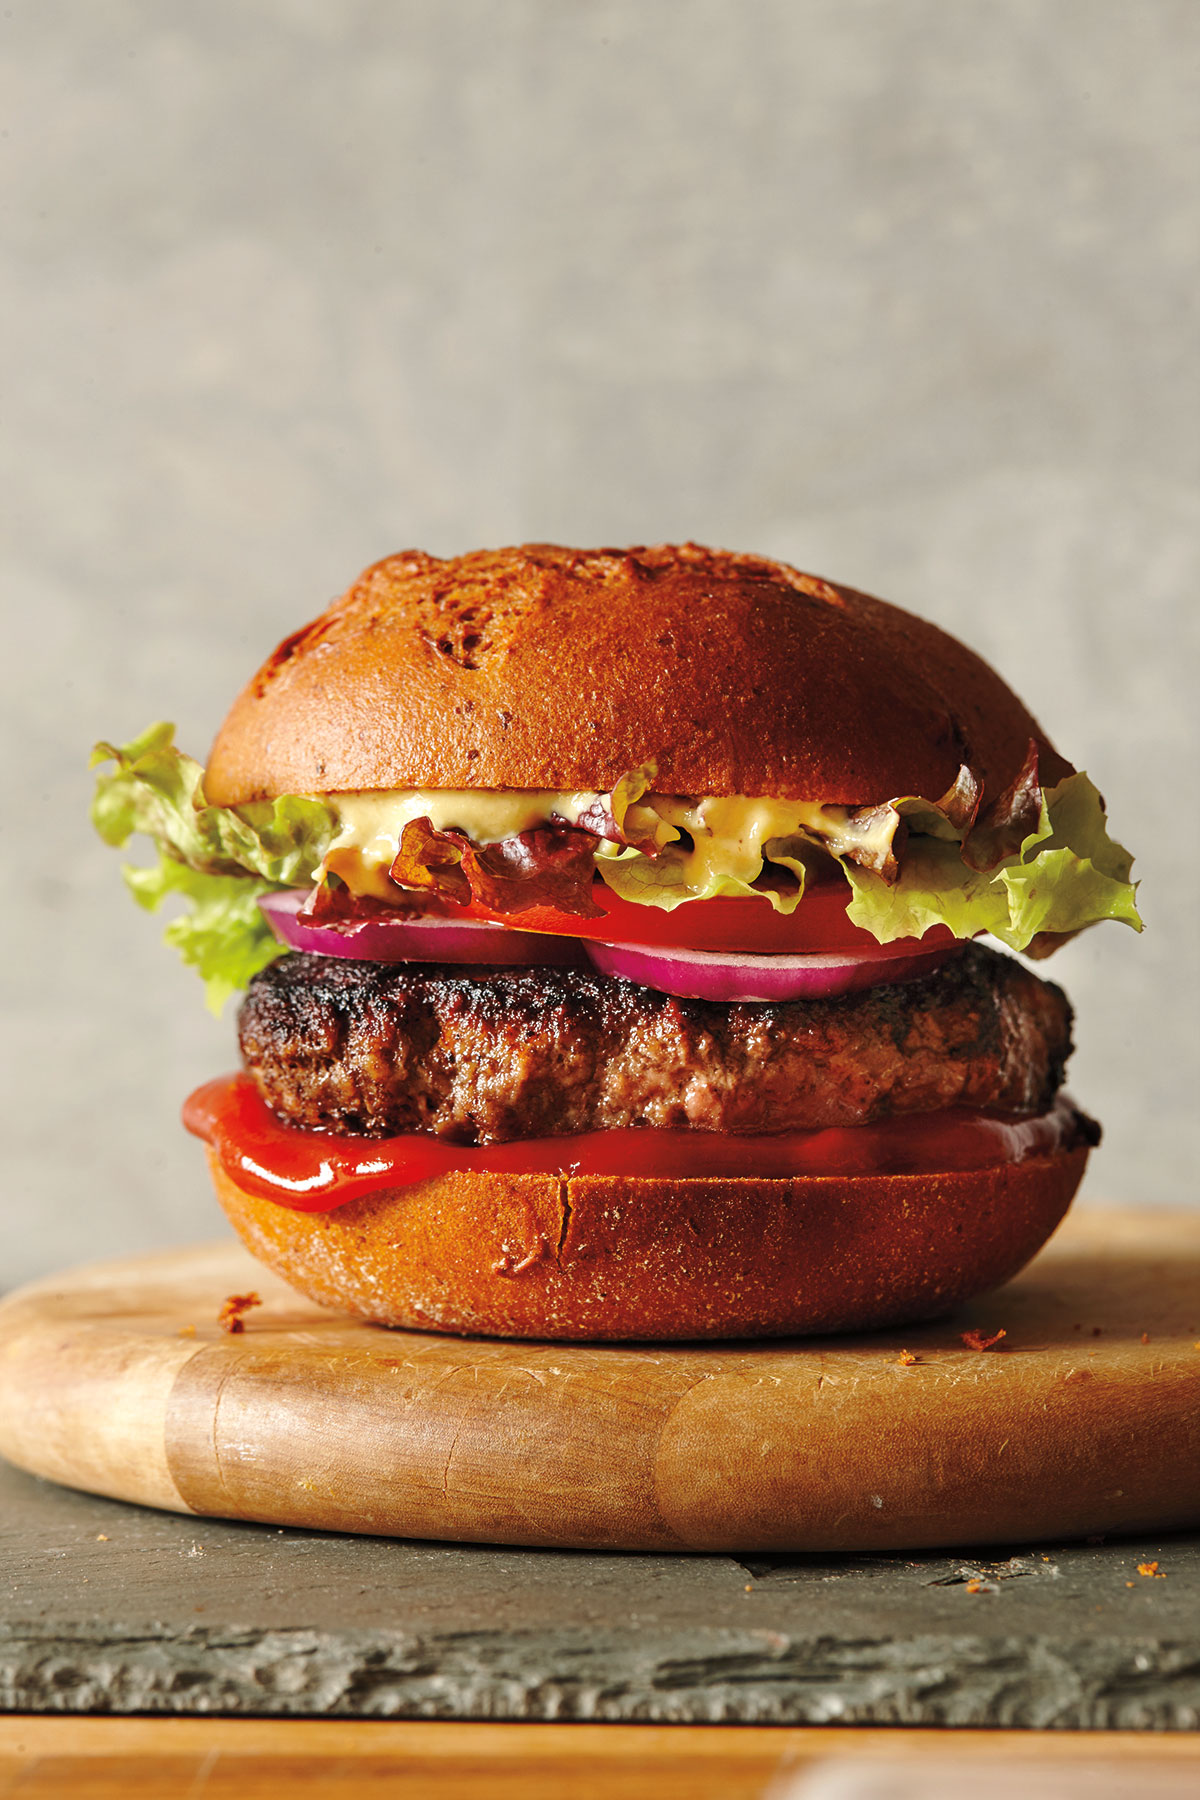 PHOTO: Classic beef burger, from David Zinczenko's "Zero Belly Cookbook," is shown.